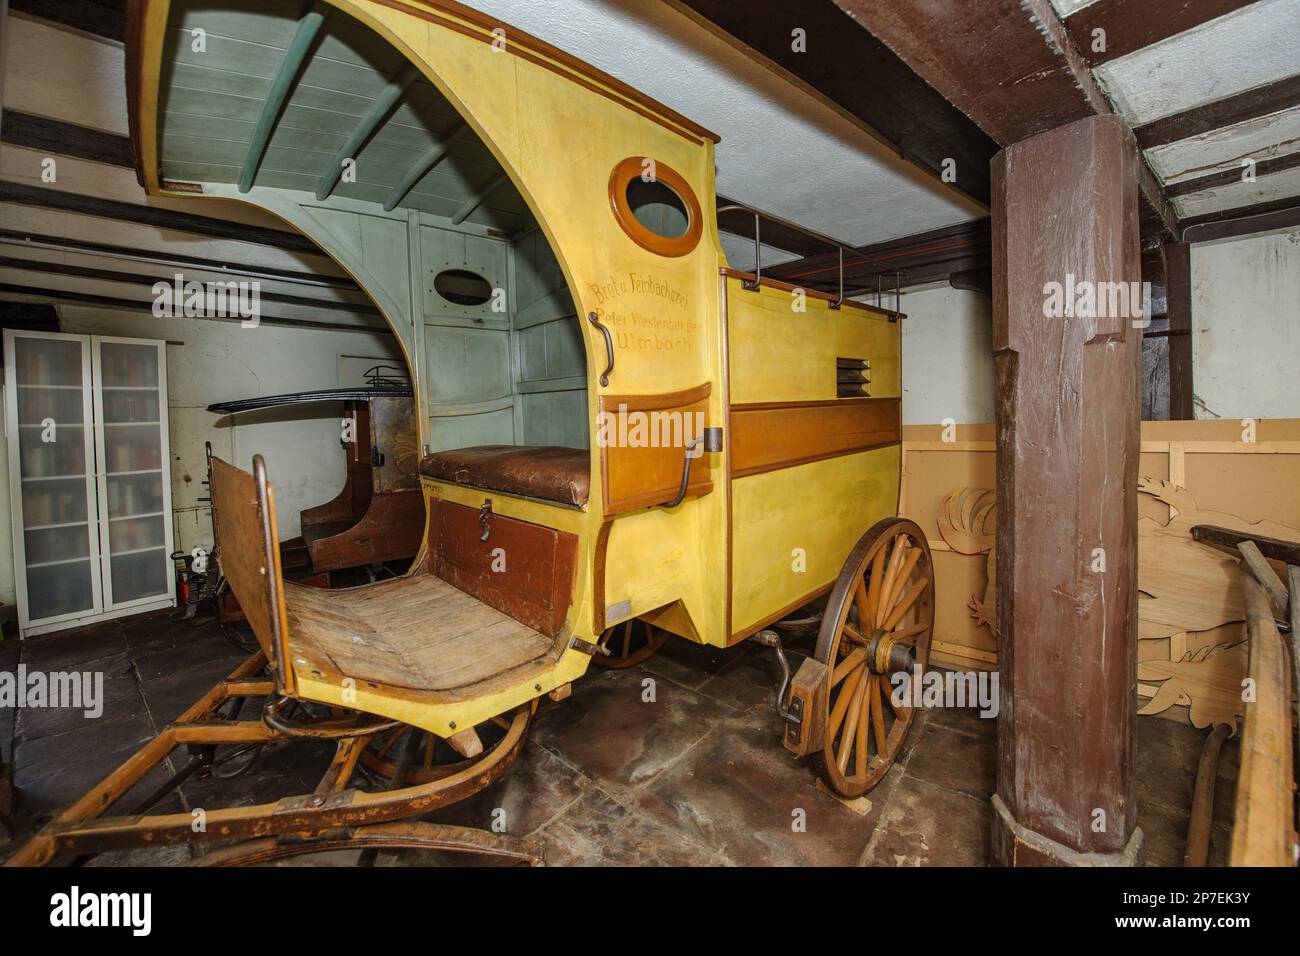 Einachsige Kutsche mit Vordach in ehemaliger Geräteschuppen von Museum Grimm-Haus, Steinau an der Straße, Hessen, Deutschland, Europa Banque D'Images